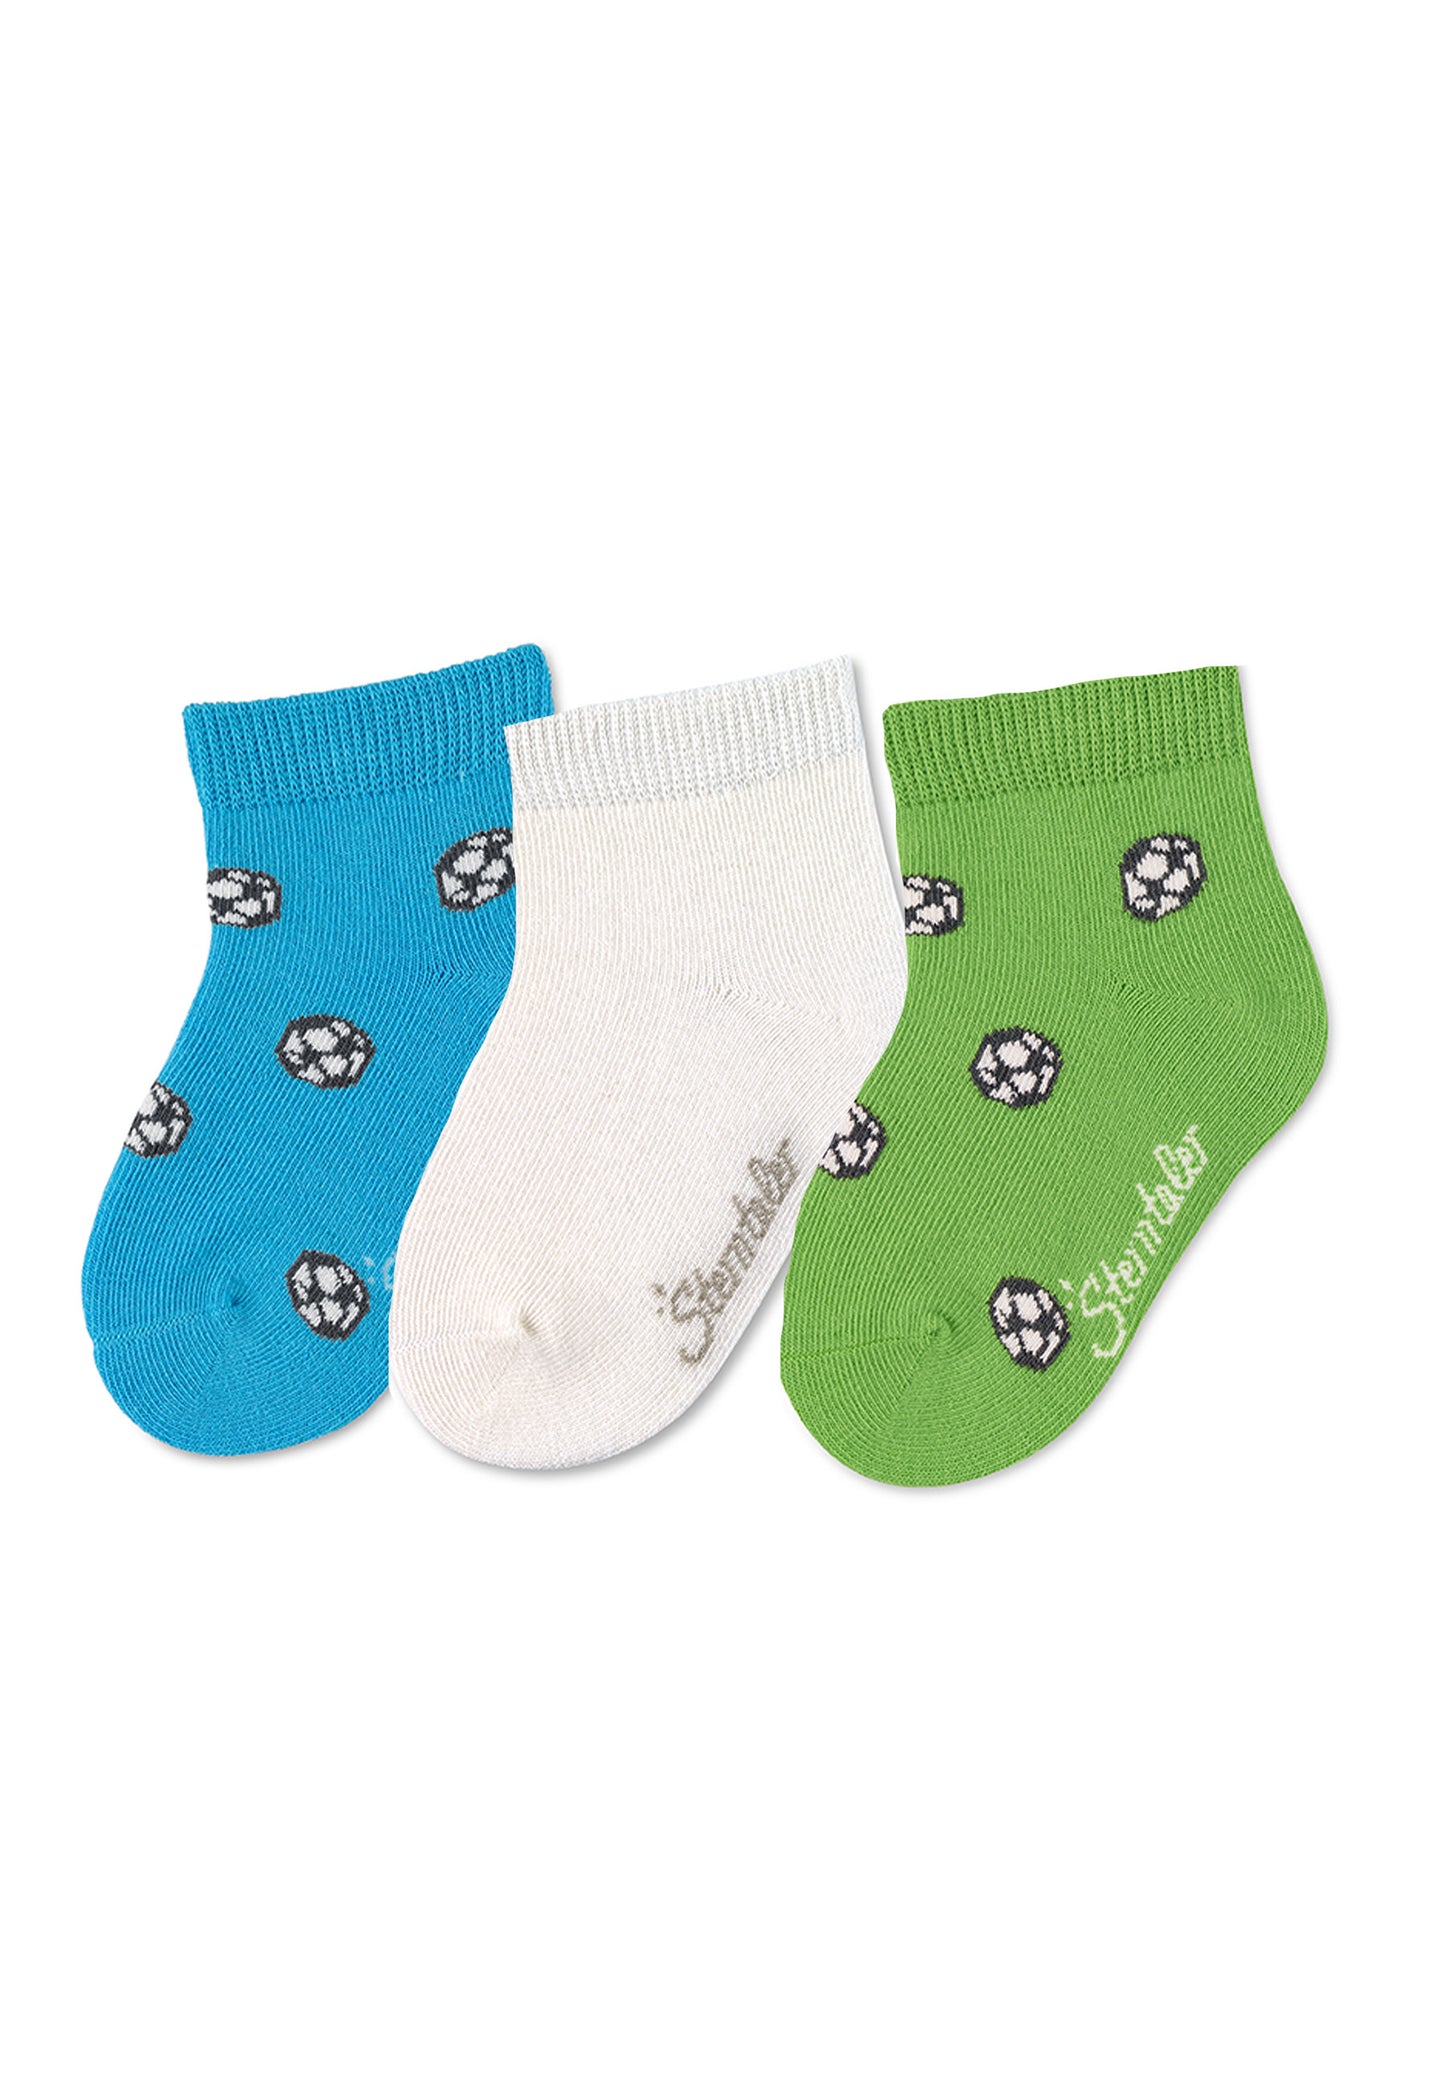 Sneaker-Socken Fußball, 3er-Pack